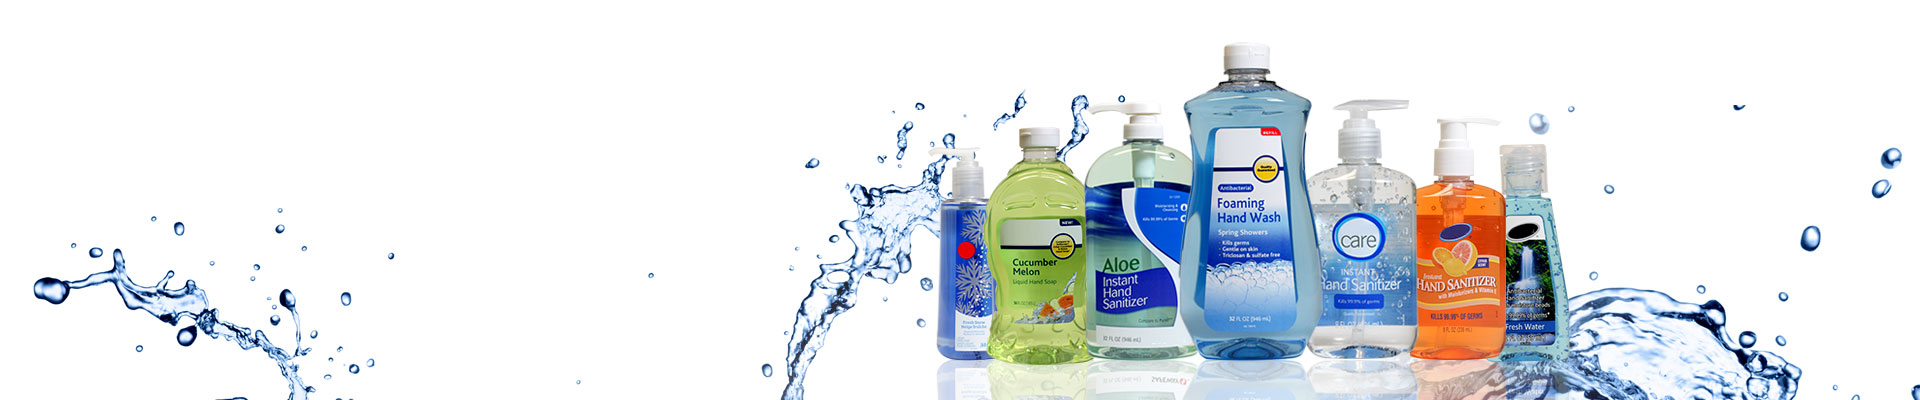 Apollo Liquid Soap & Hand wash